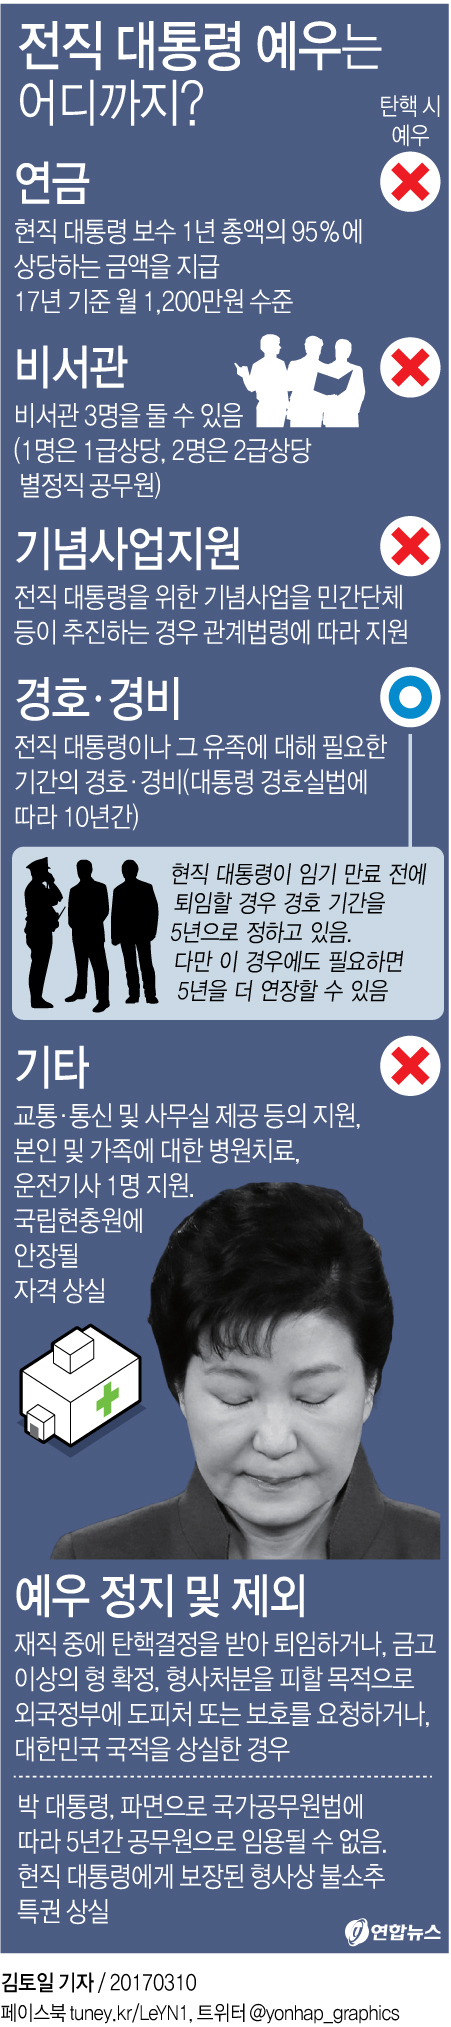 [대통령 탄핵] '자연인 박근혜'도 국가 경호대상 - 1